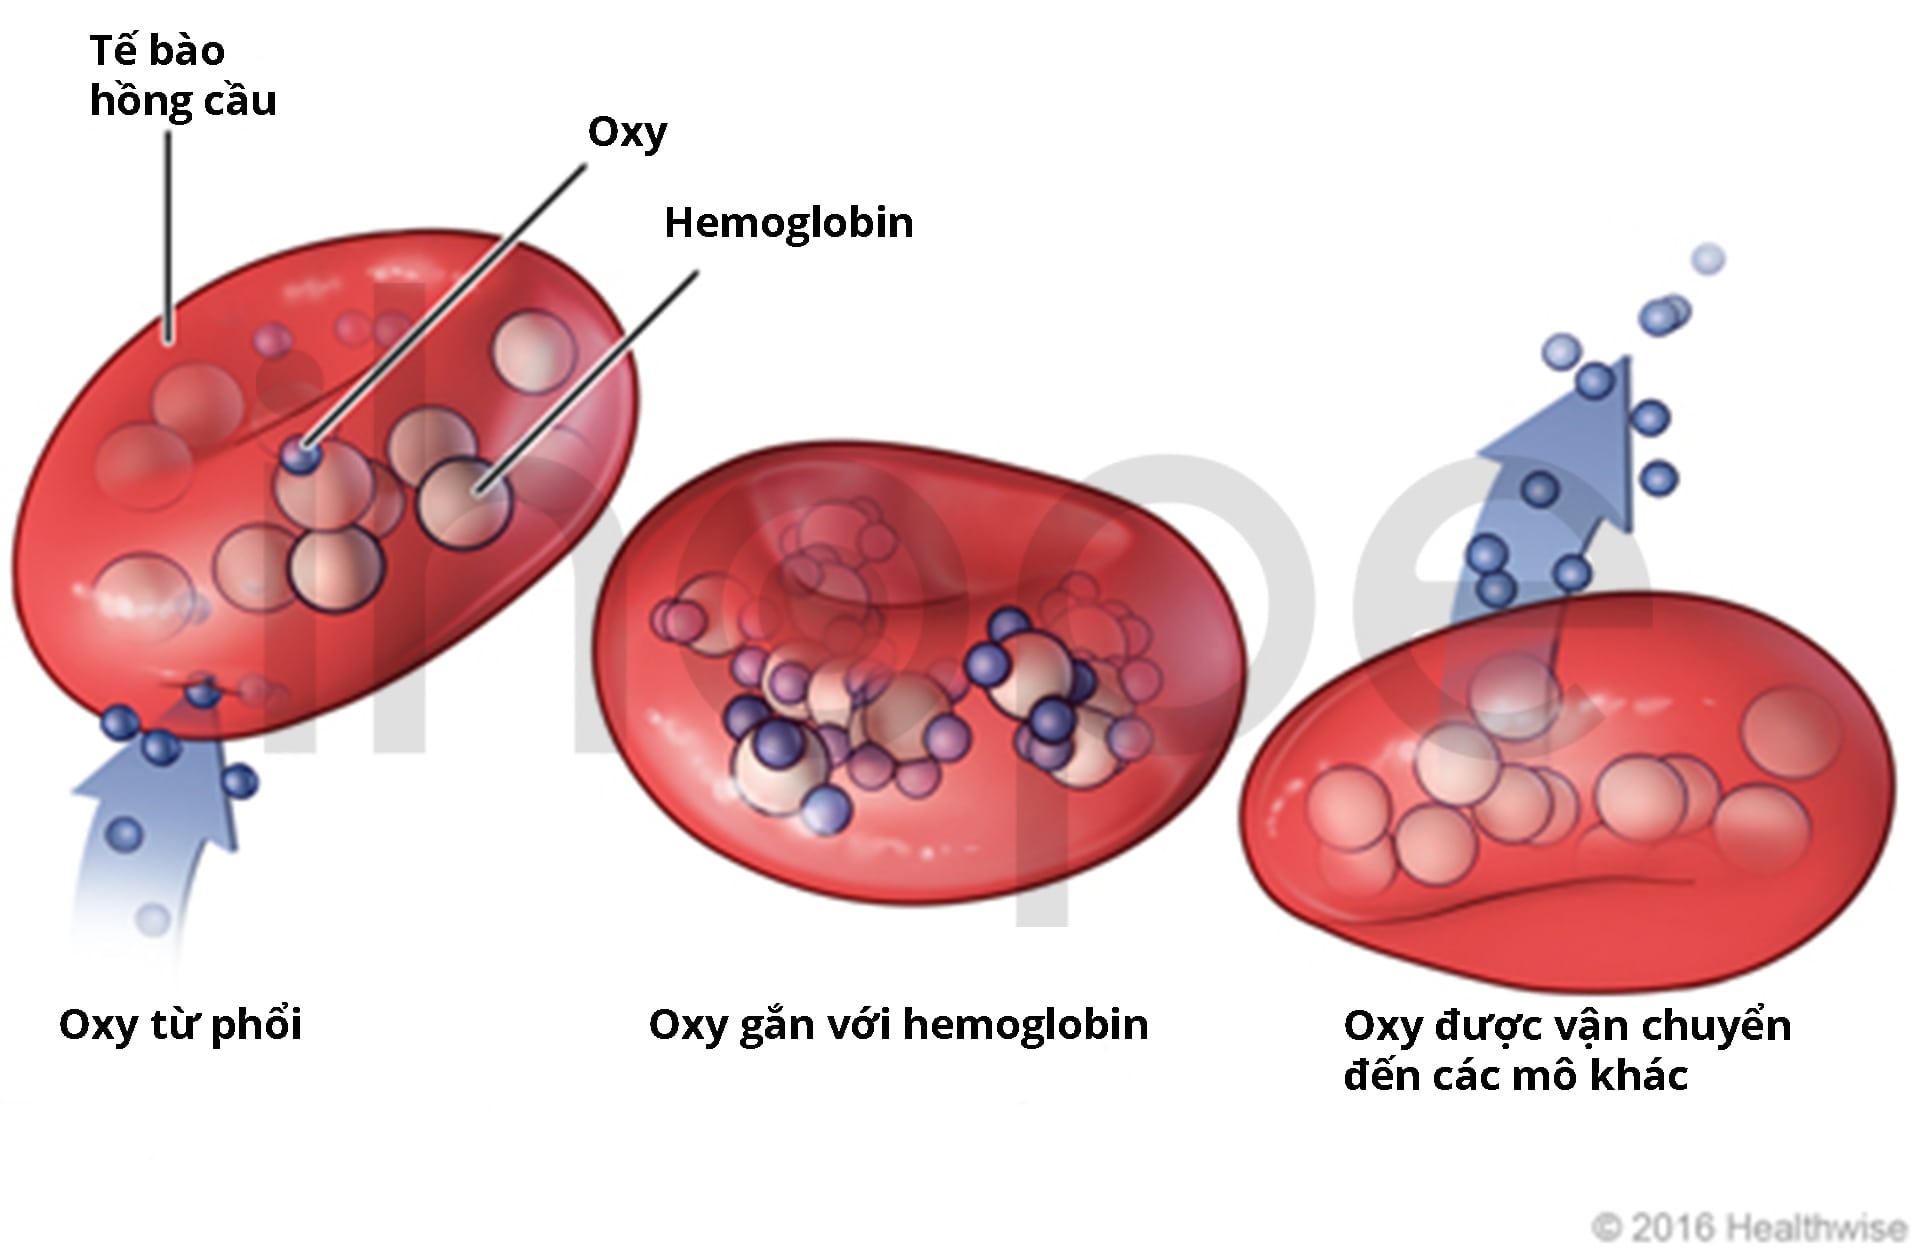 hemoglobin nằm trong tế bào hồng cầu giúp vận chuyển oxy-min